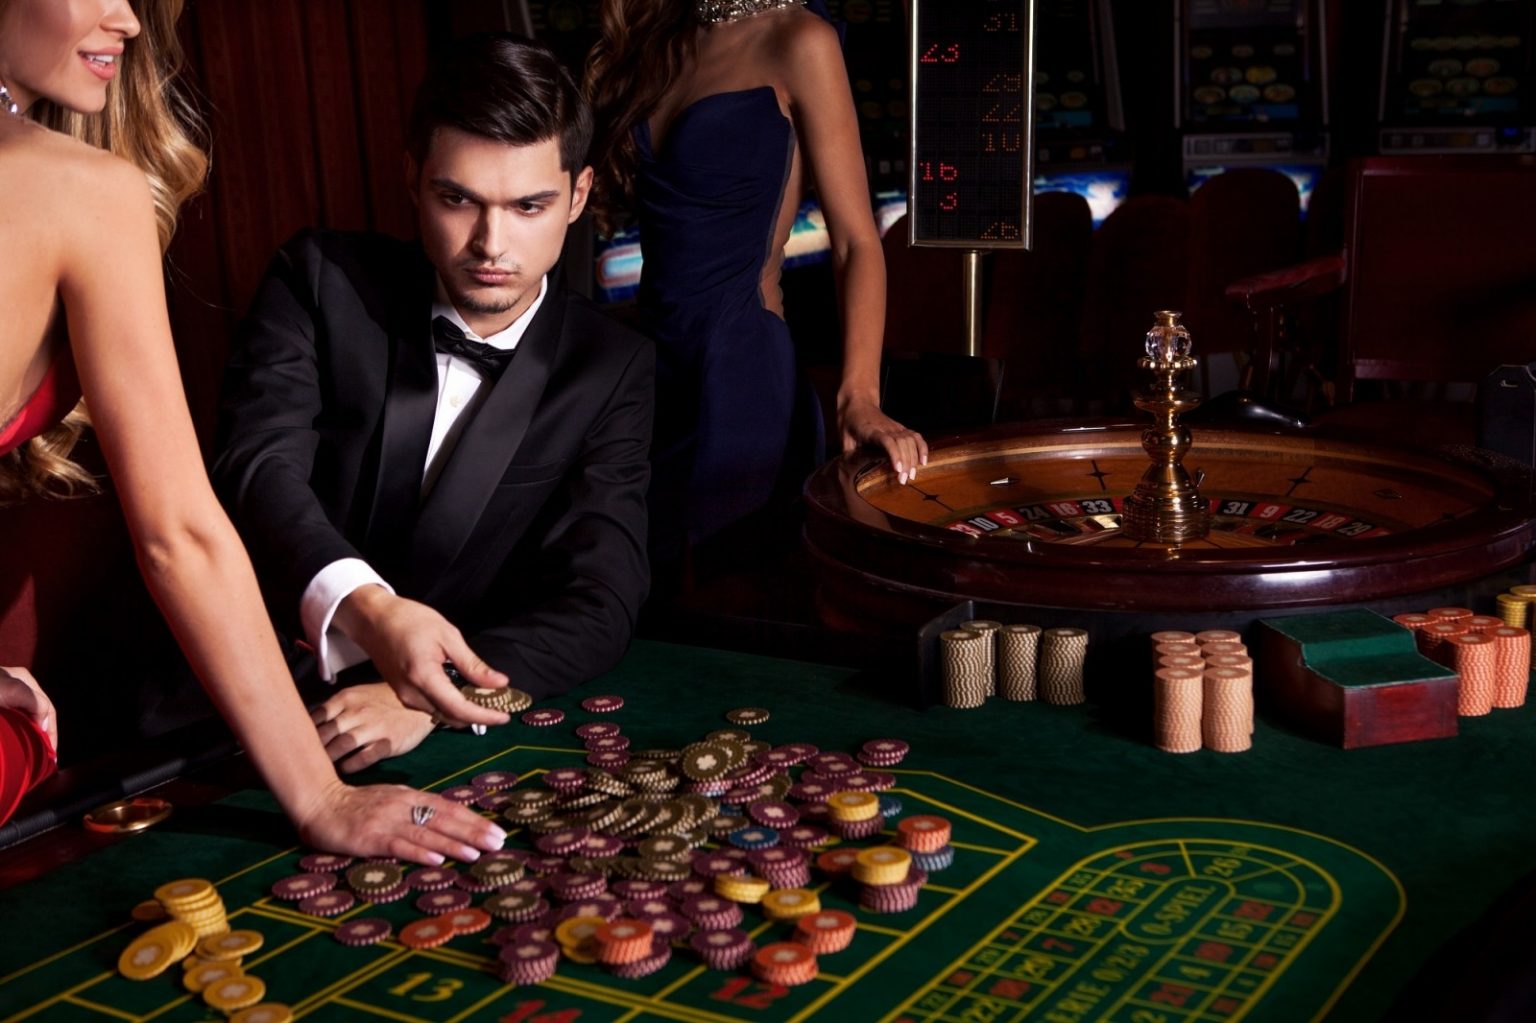 Моды казино карты в дурака на раздевания играть онлайн бесплатно